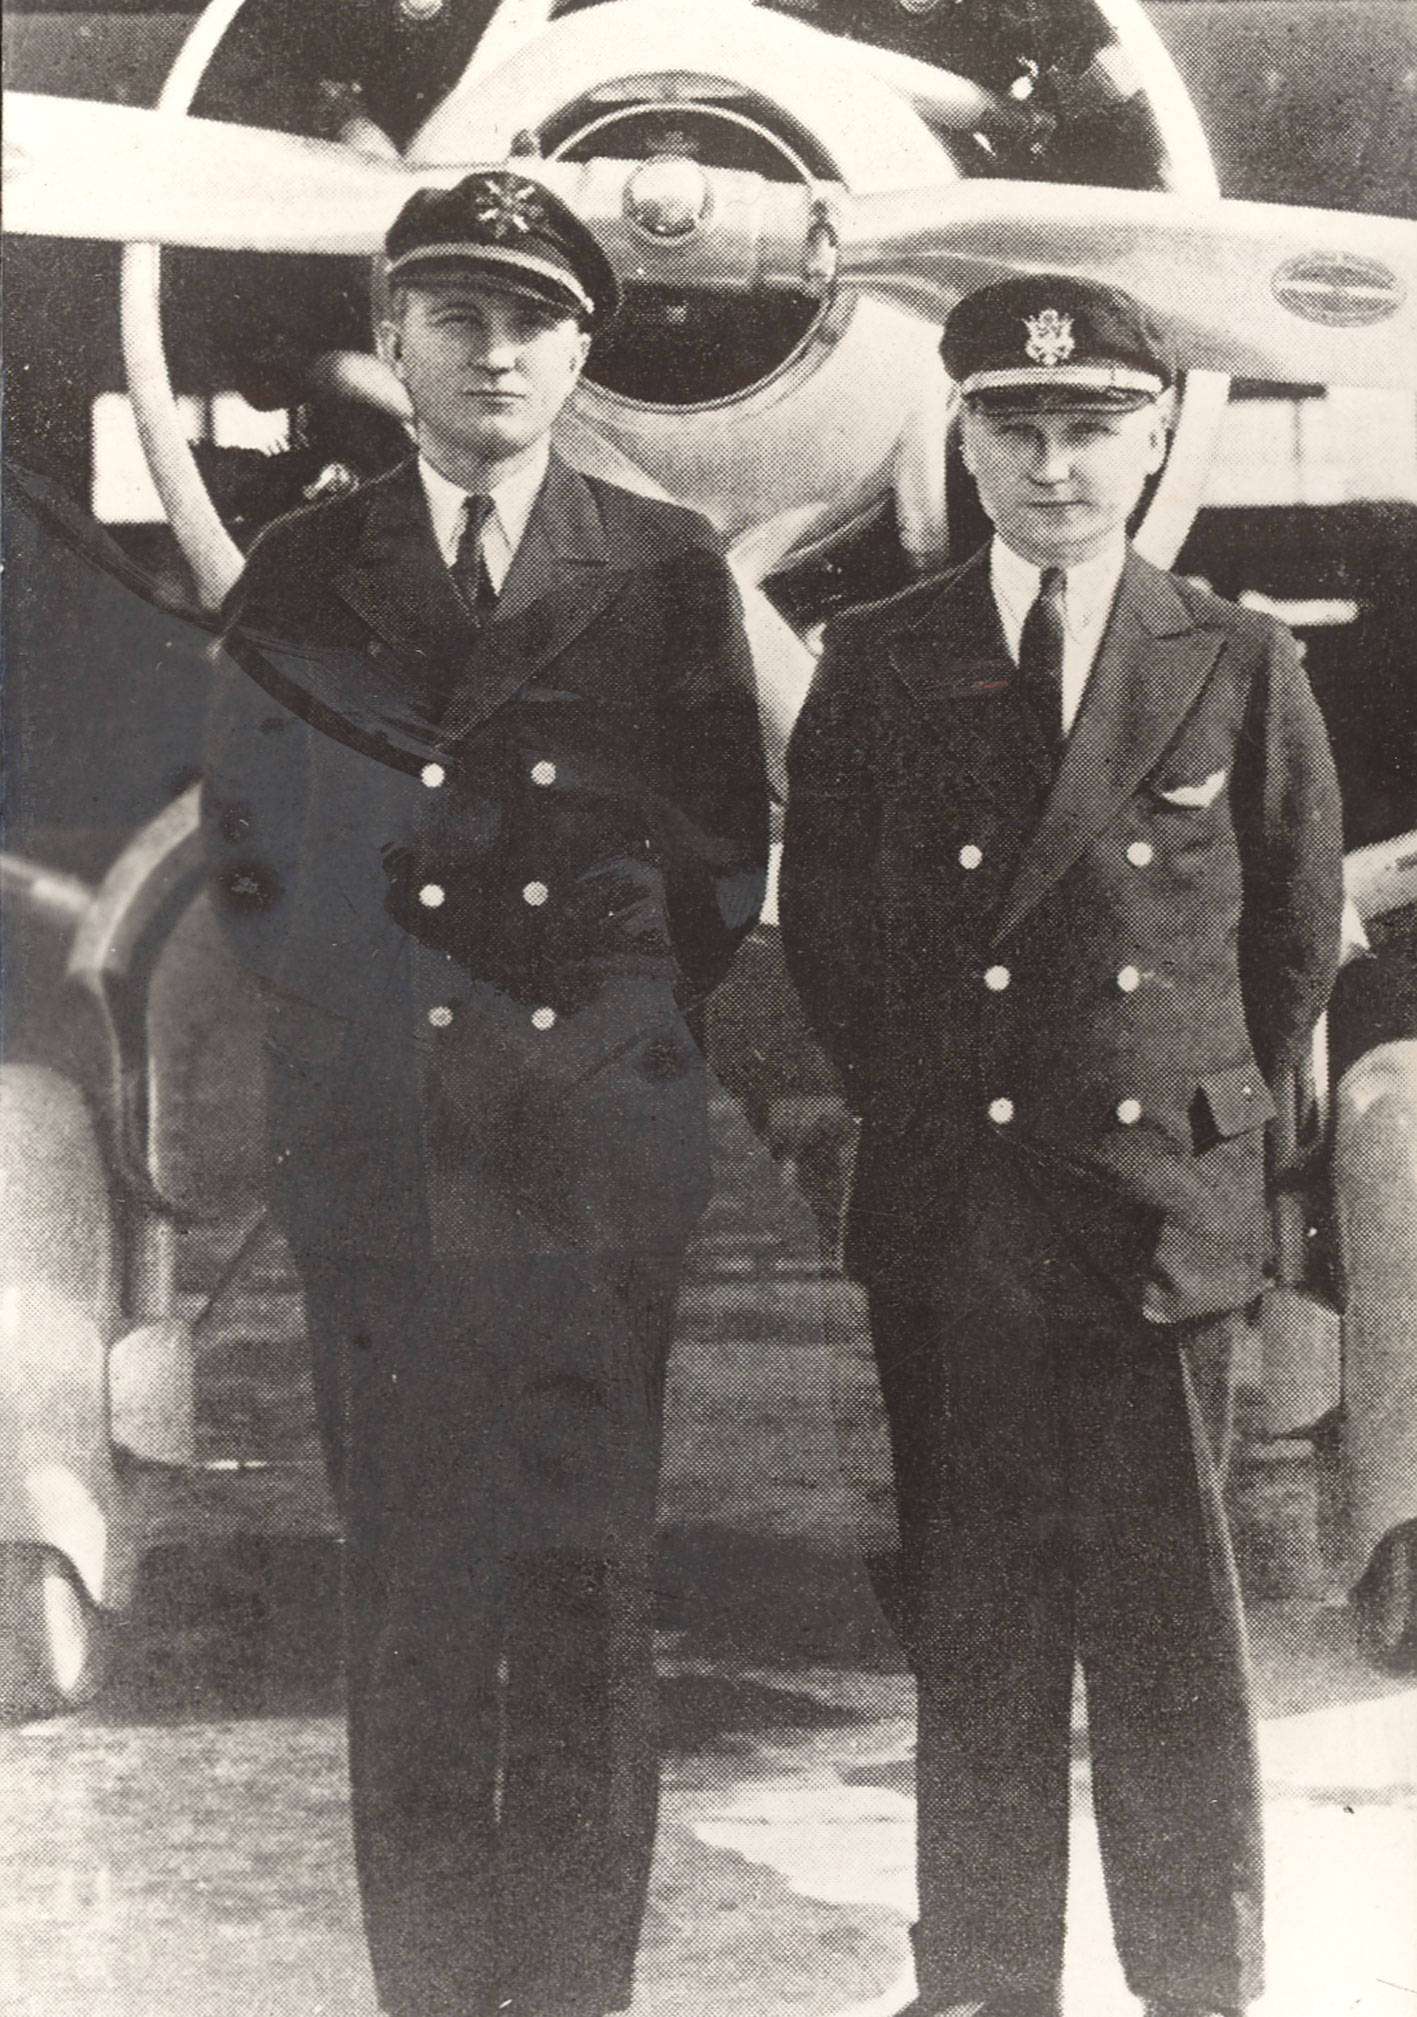 Lakūnai Steponas Darius ir Stasys Girėnas prieš skrydį Niujorke, Floydo Bennetto oro uoste. Pirmas iš dešinės S. Girėnas, antras – S. Darius. JAV, Niujorkas, 1933 m. liepos 15 d. | Vytauto Didžiojo karo muziejaus nuotr.